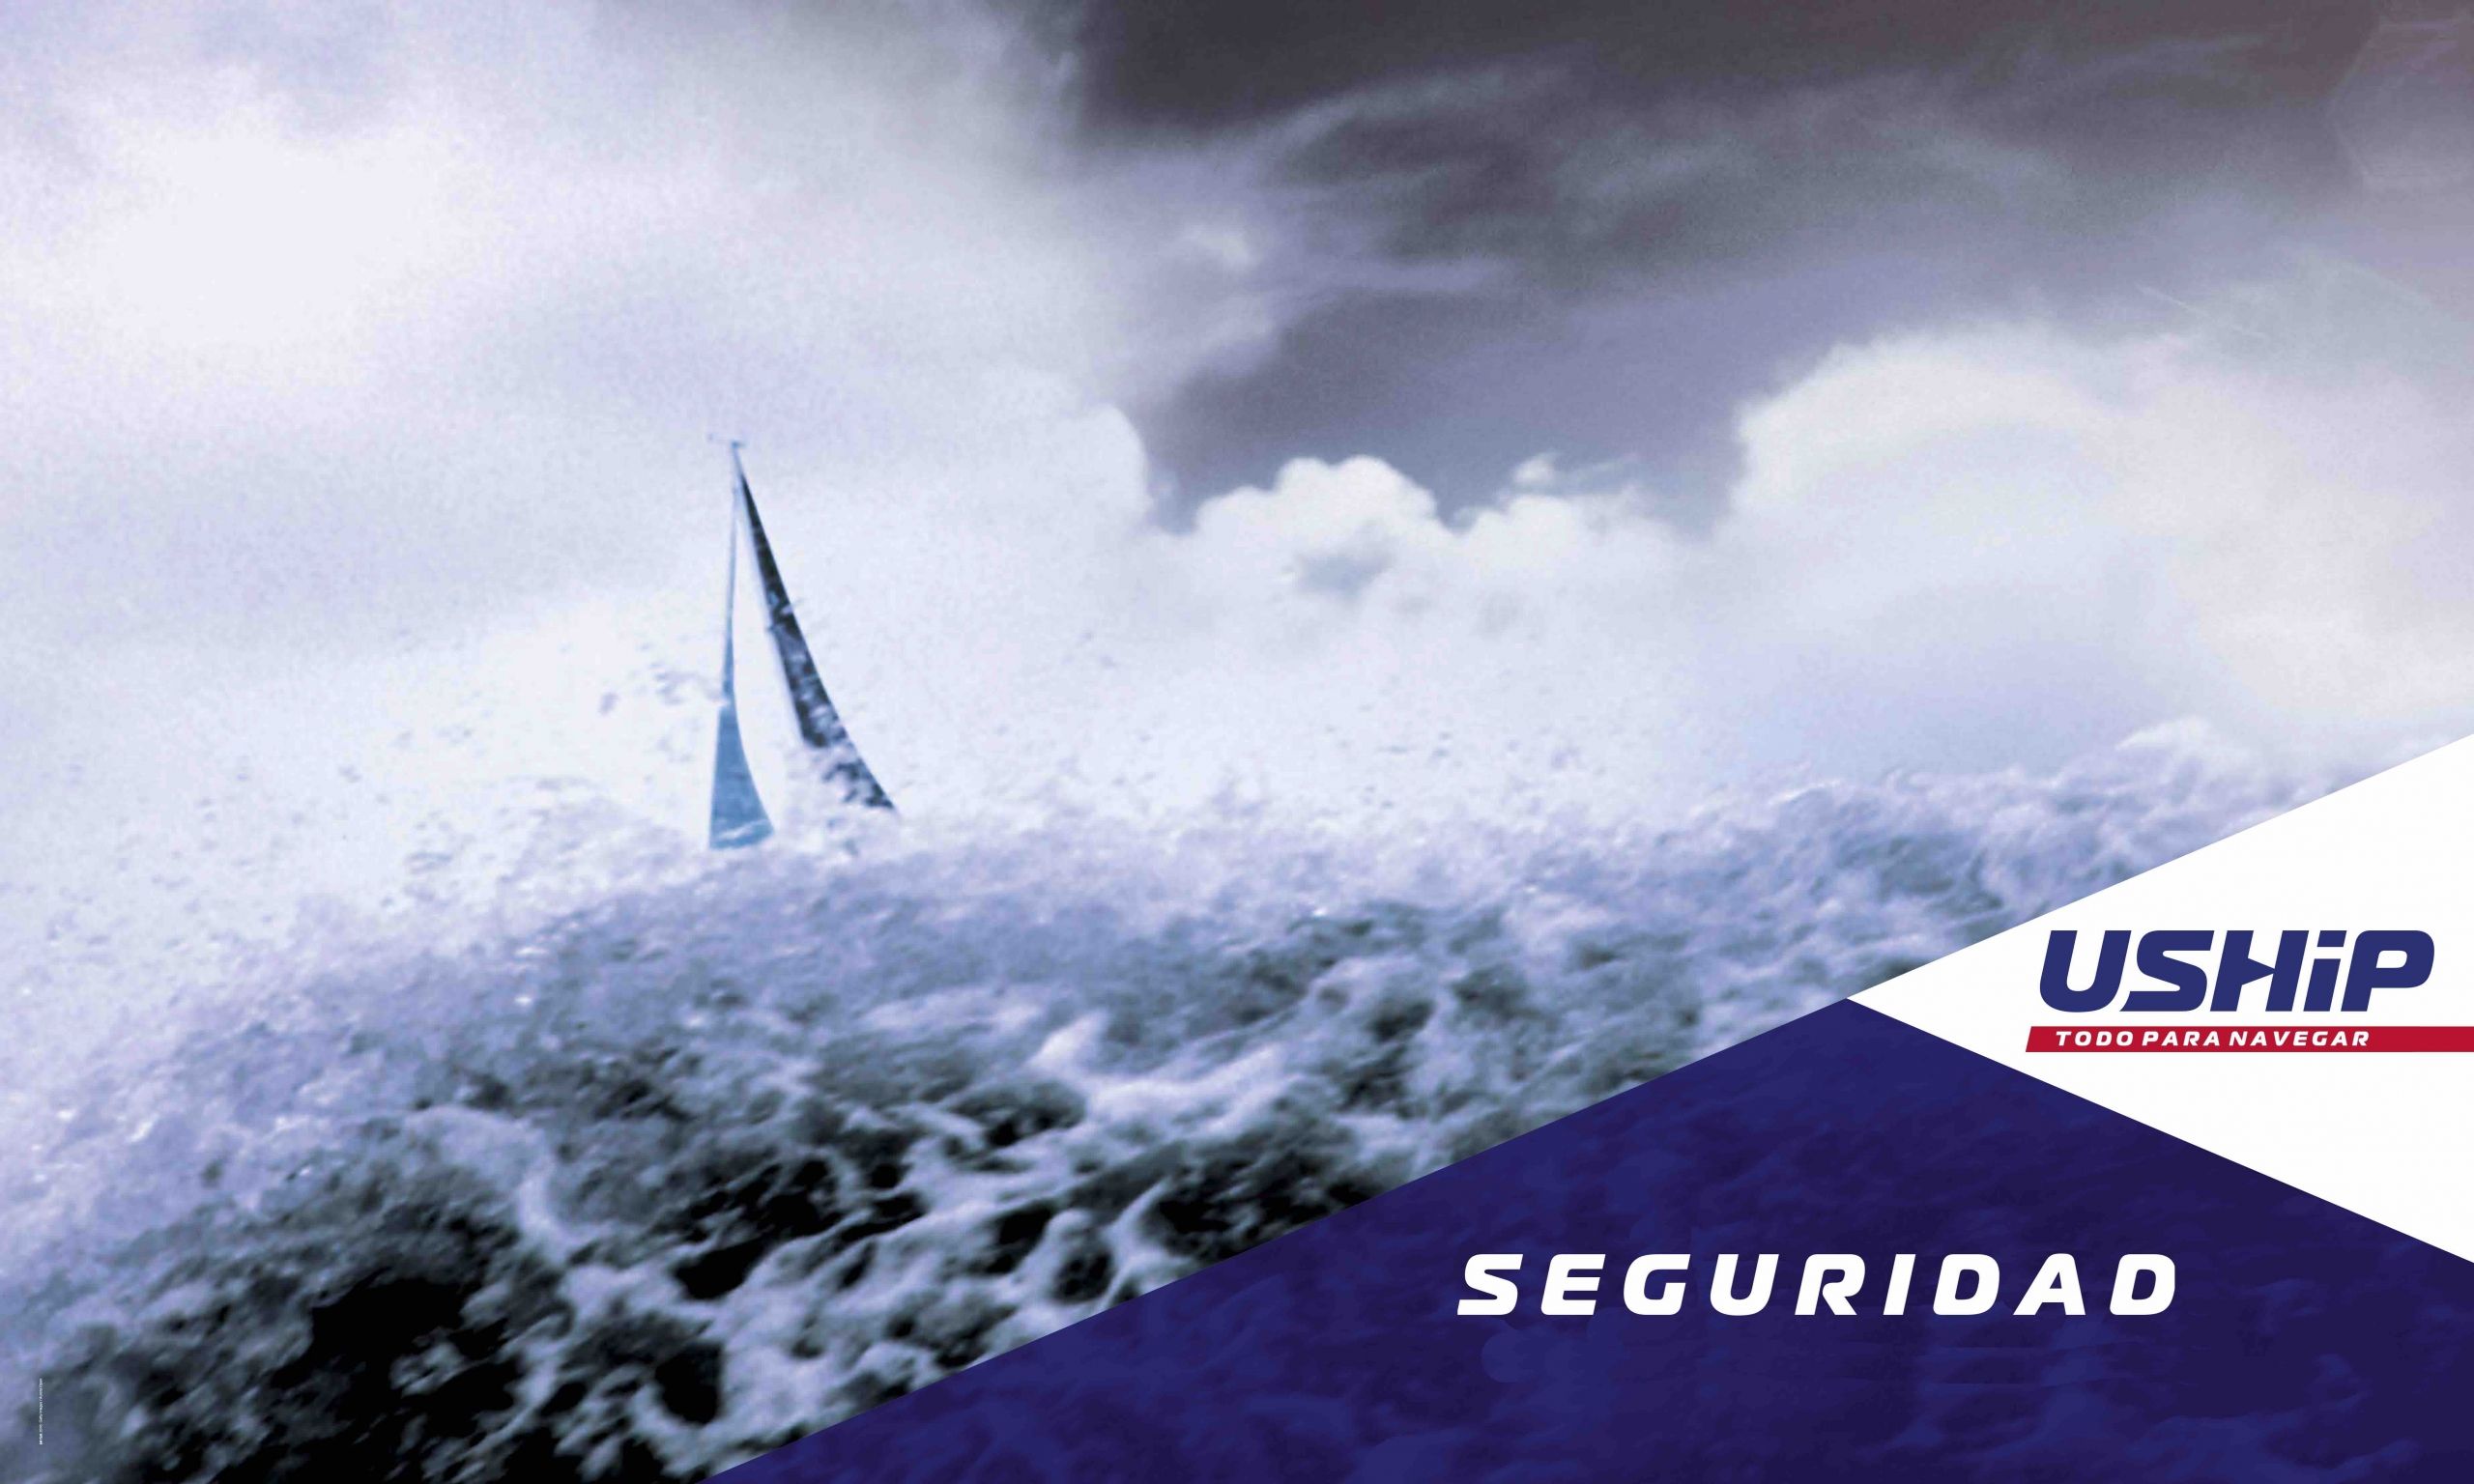 Equipamiento de seguridad nautico y salvamento marítimo - Tienda náutica